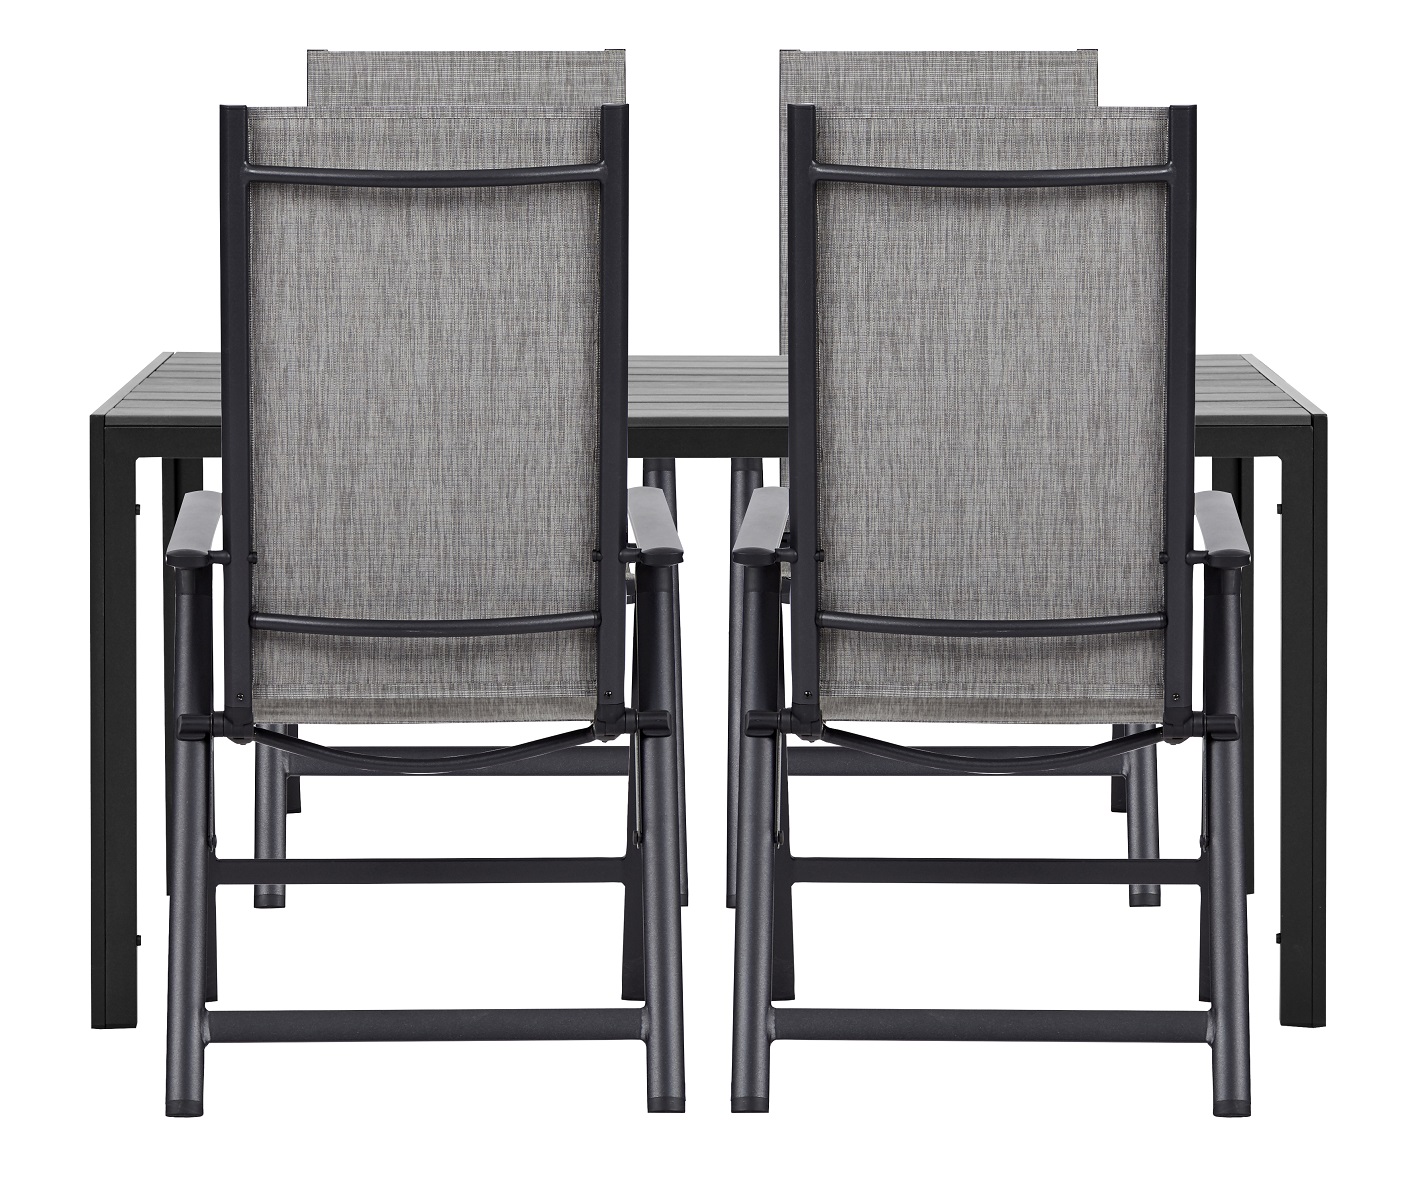 Living Outdoor - Venoe Garden Table 150 x 90 cm -  Aluminium/Polywood with 4 pcs. Omoe Position Garden Chairs  Textile - Black /Grey - Bundle